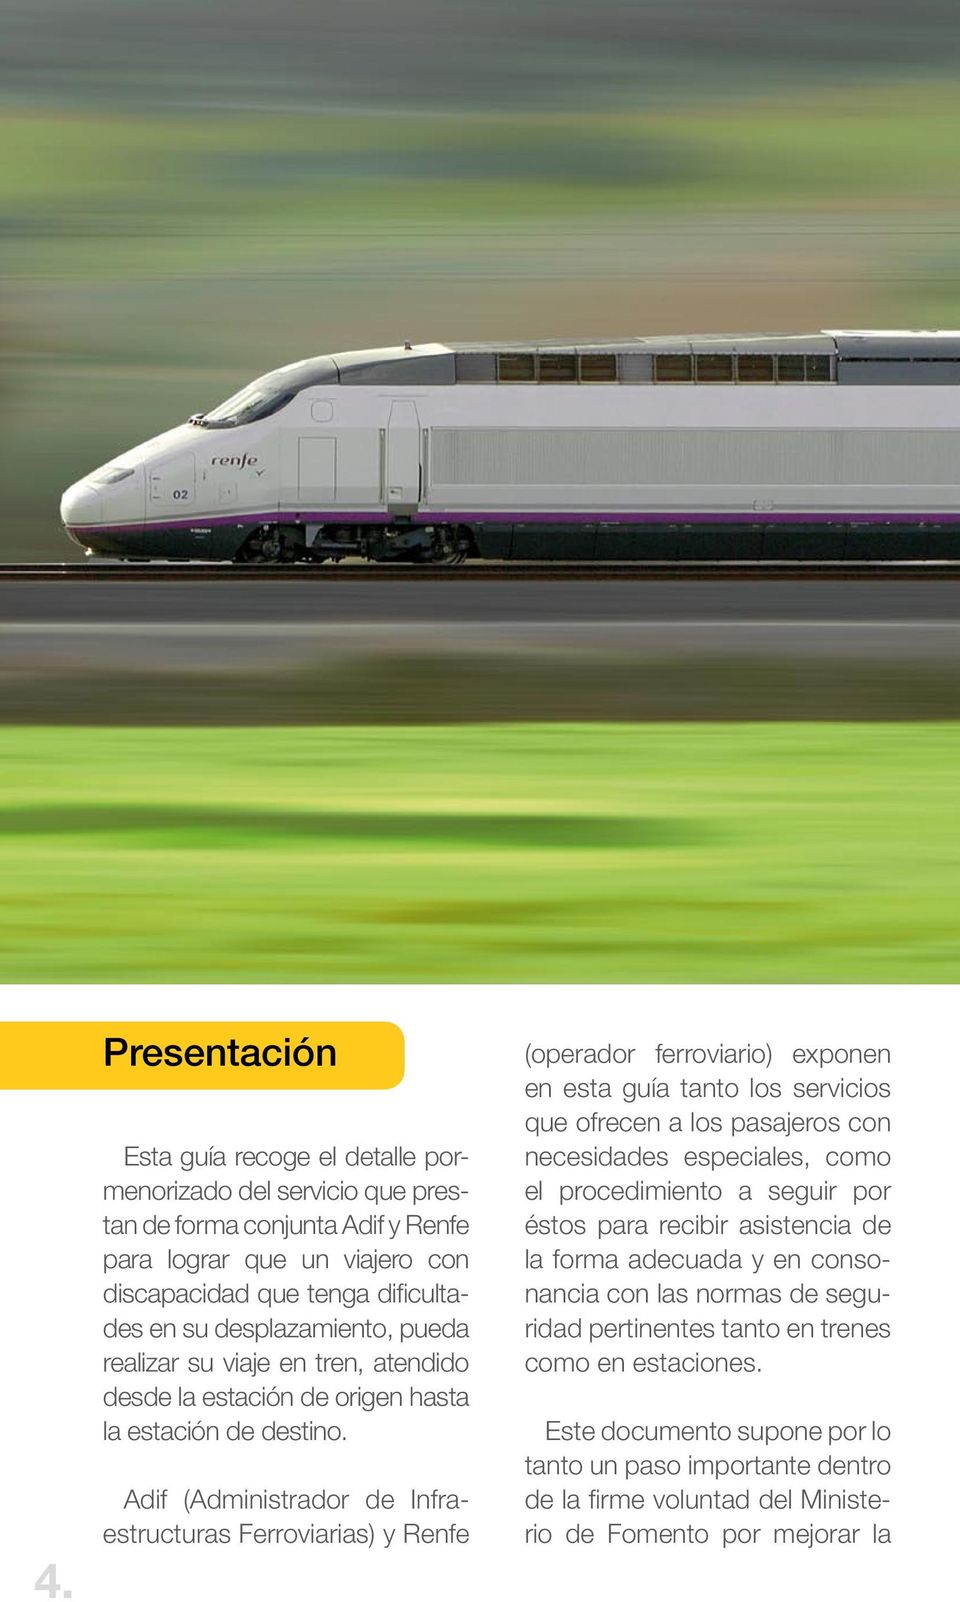 Adif (Administrador de Infraestructuras Ferroviarias) y Renfe (operador ferroviario) exponen en esta guía tanto los servicios que ofrecen a los pasajeros con necesidades especiales, como el